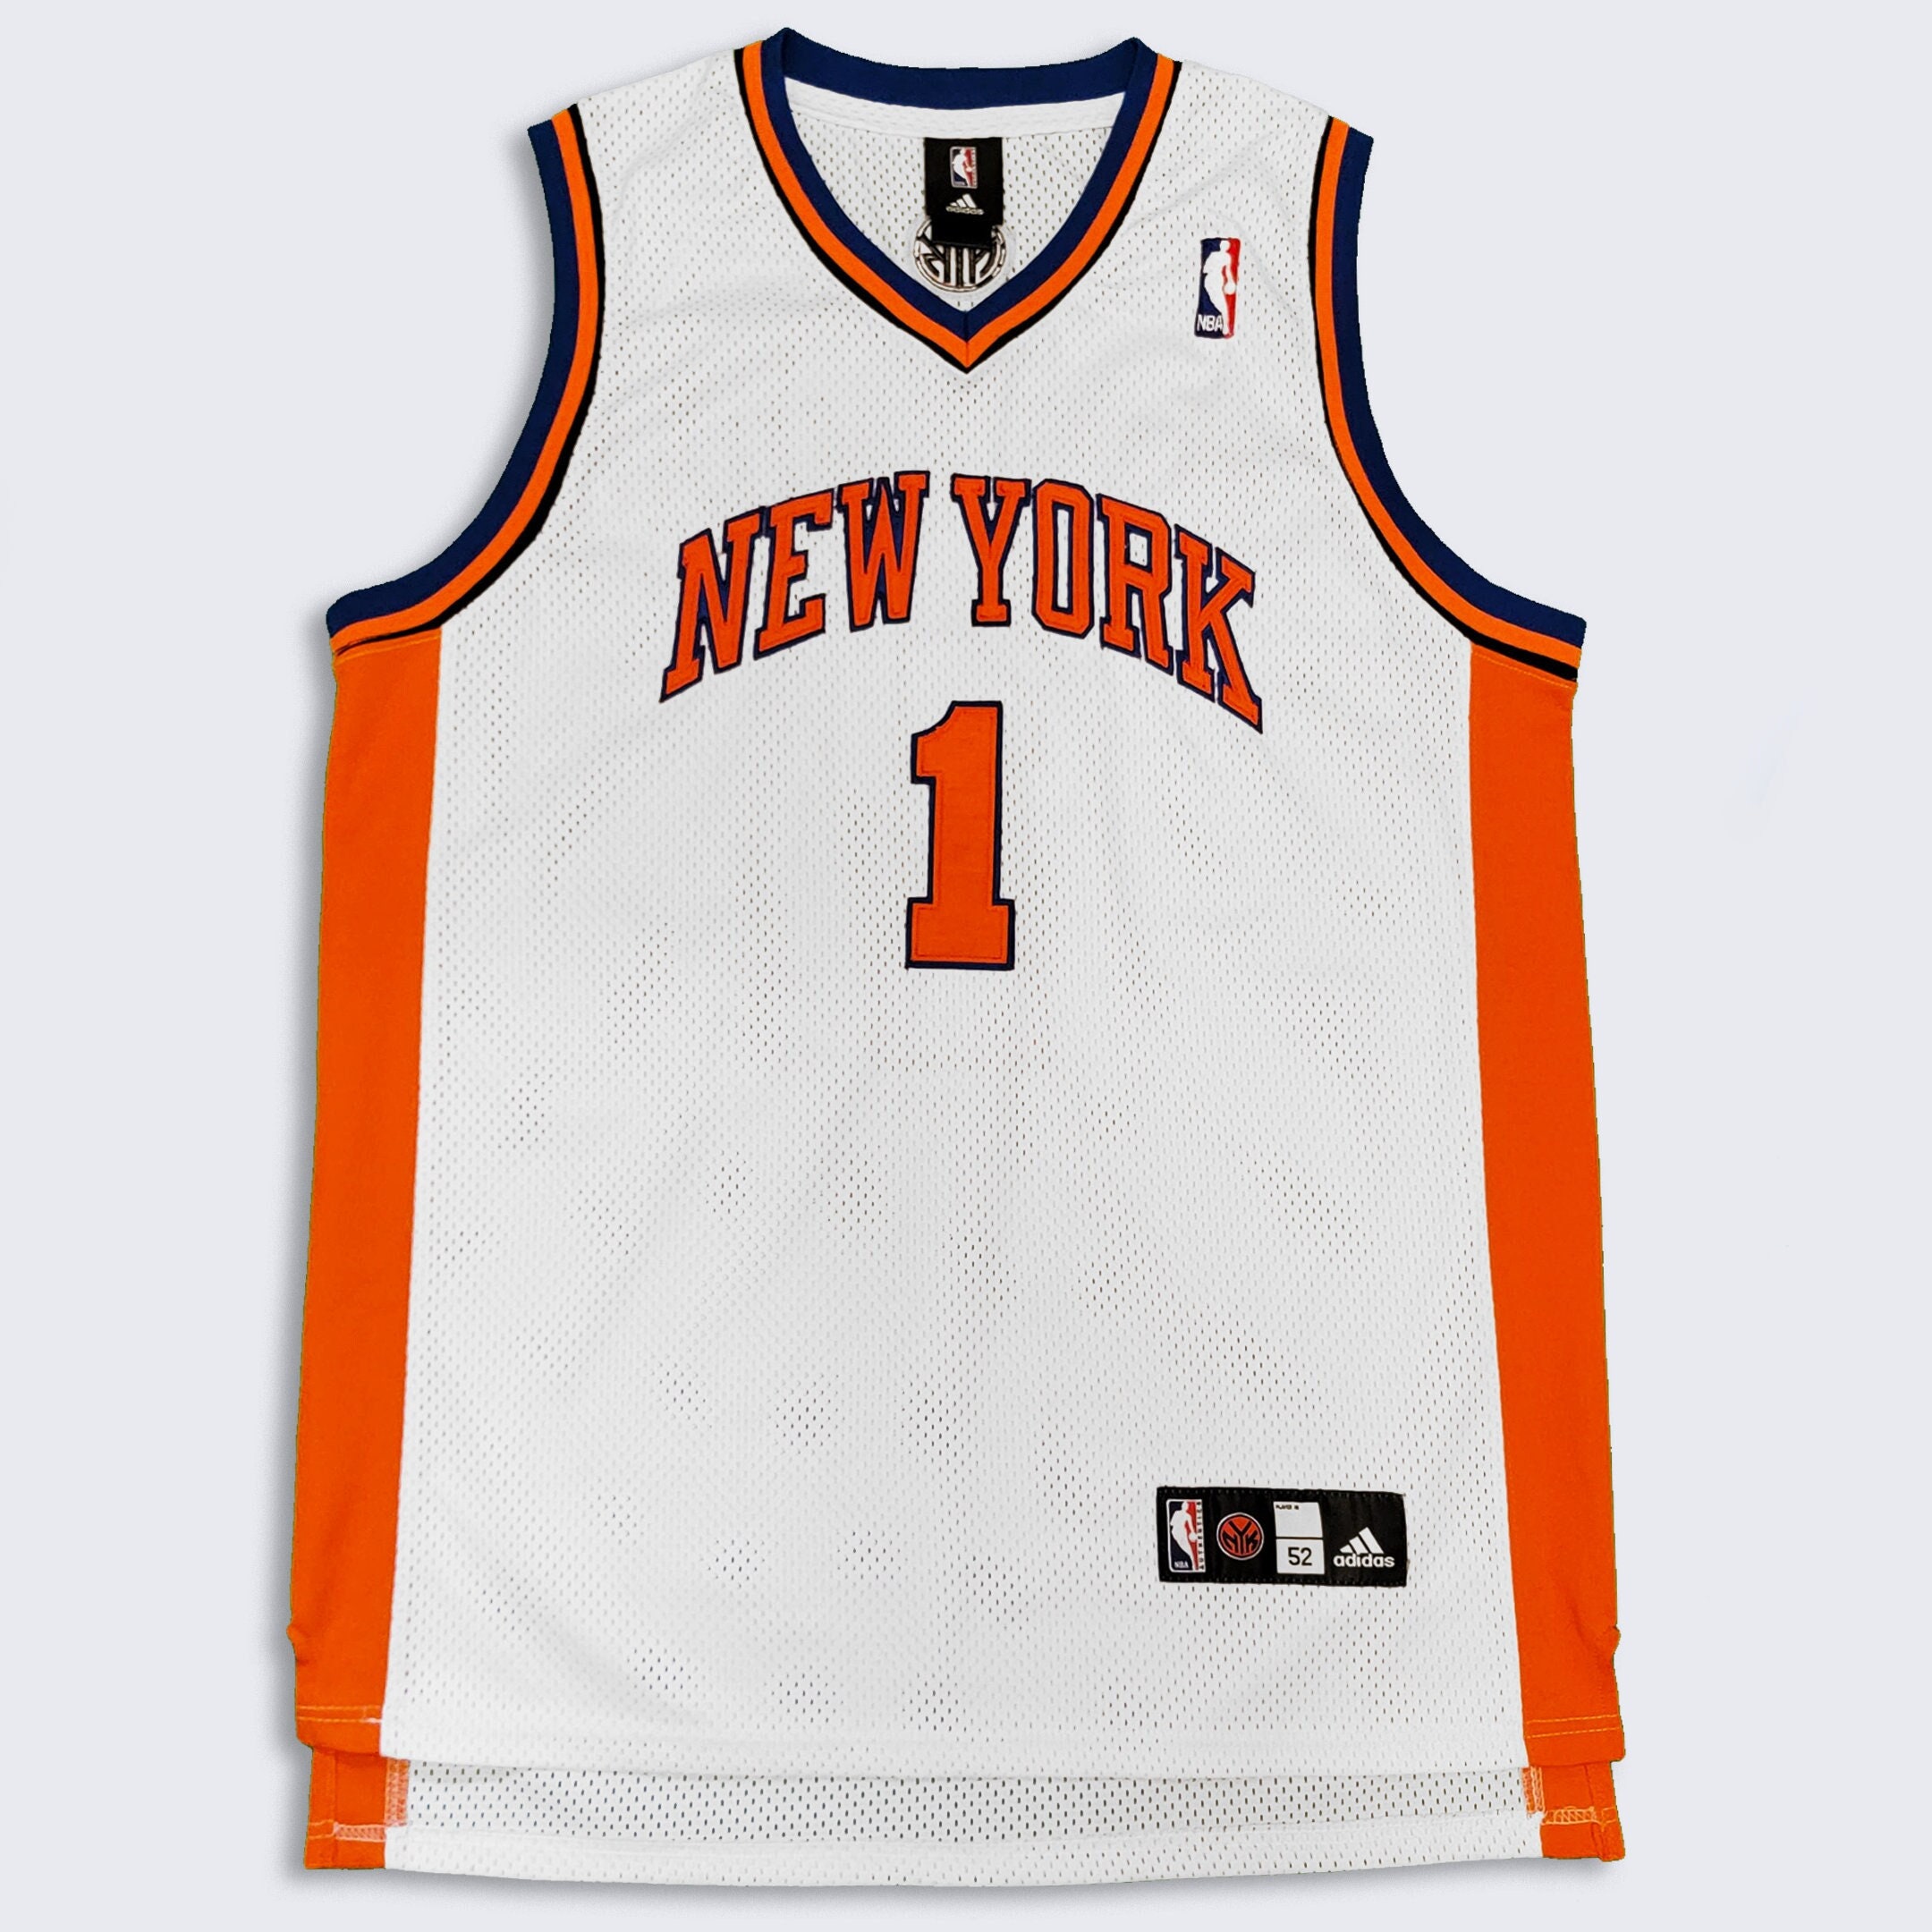 100% Authentic John Starks Vintage Champion Knicks Jersey Size 48 XL Mens